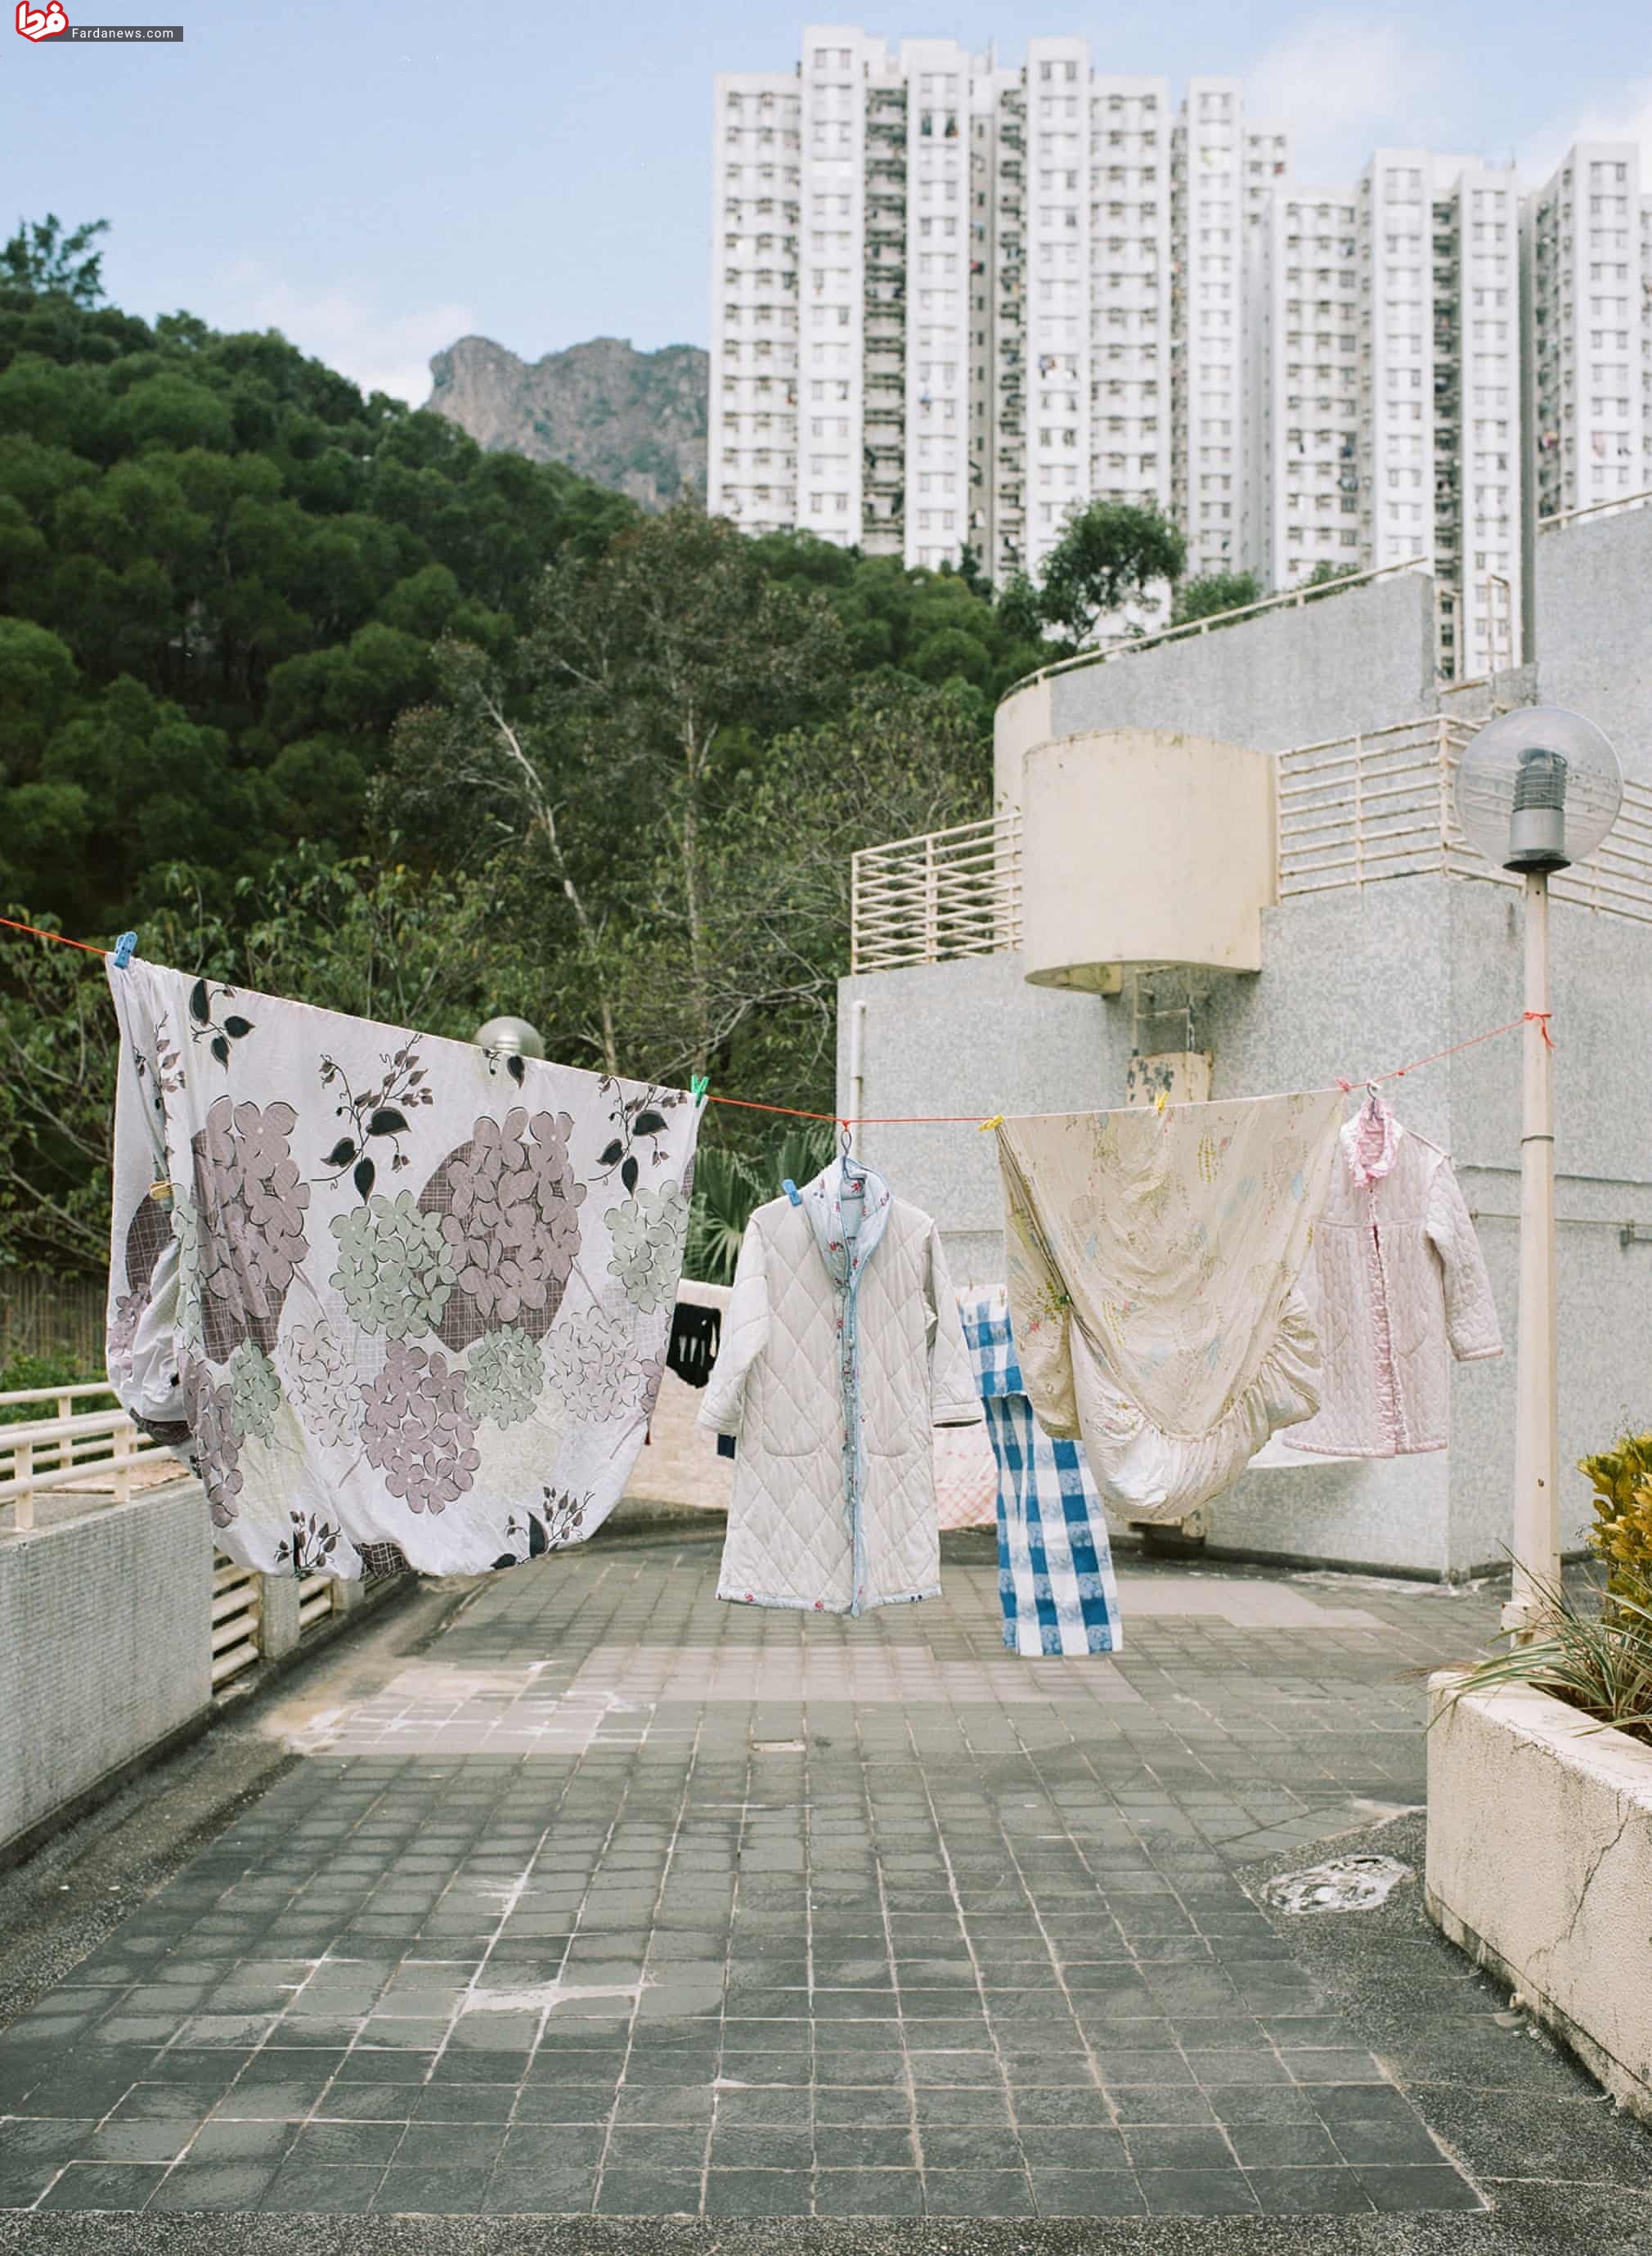 خشک کردن لباس در اماکن عمومی+عکس